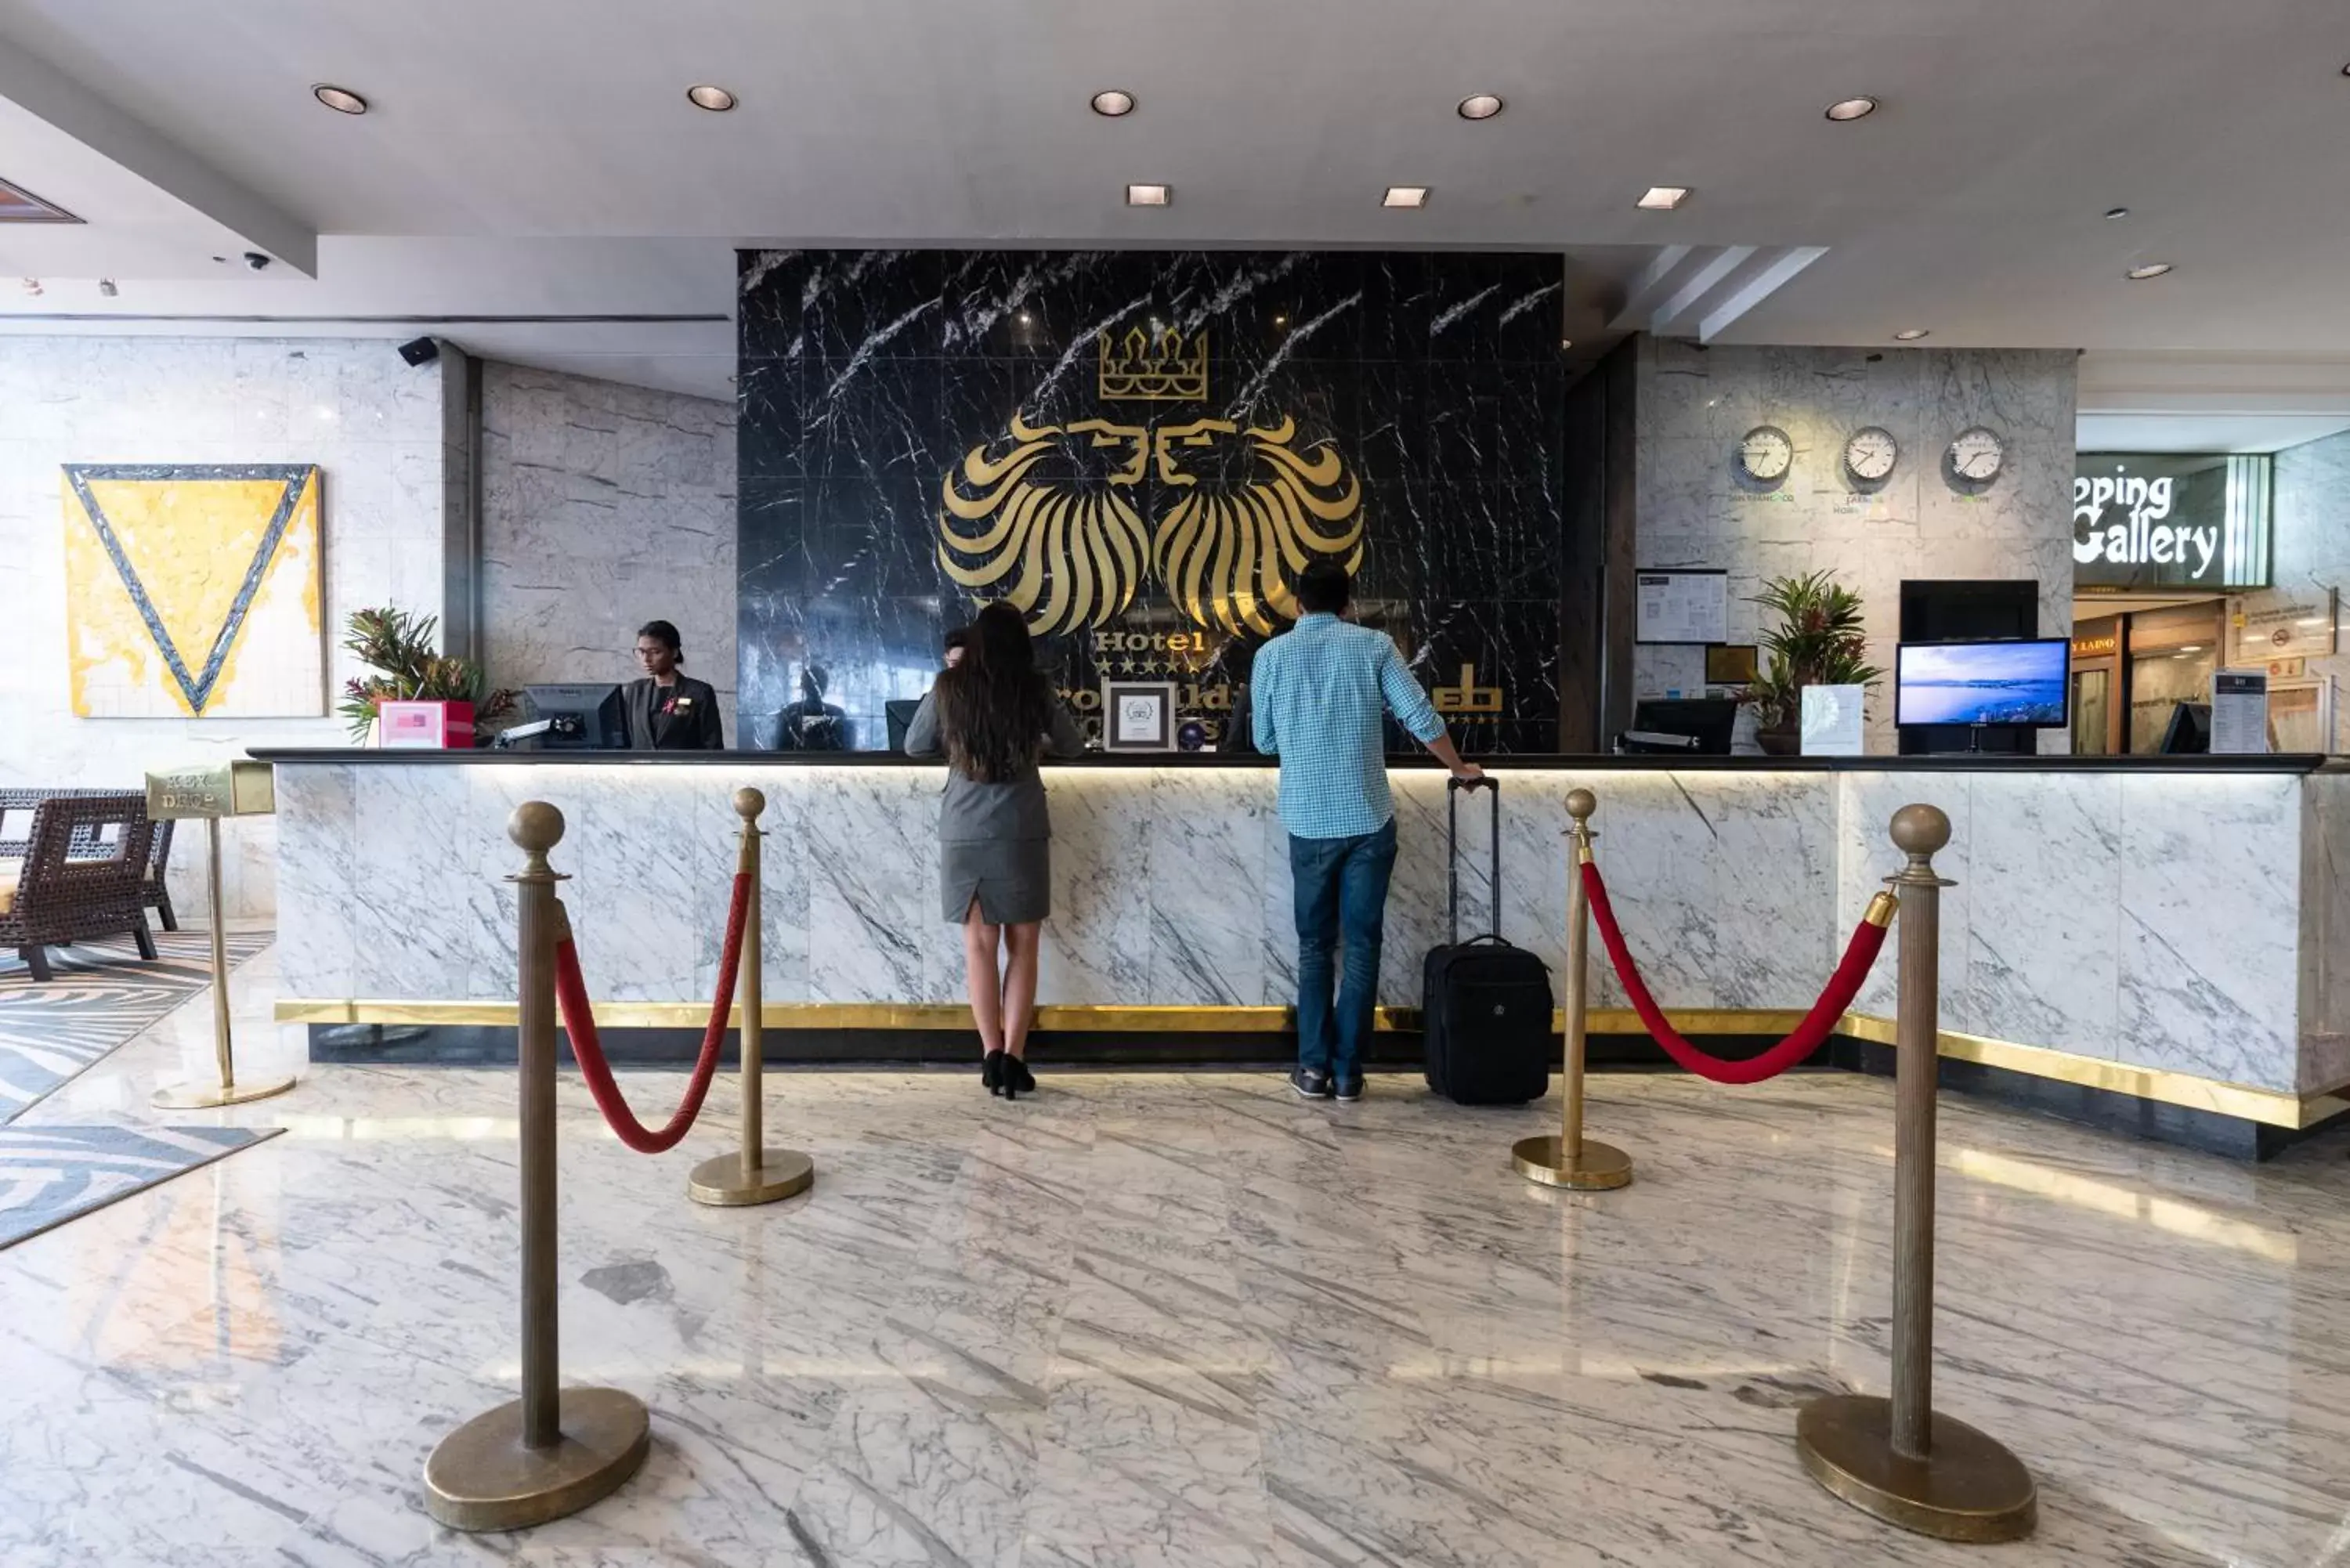 Lobby or reception in Eurobuilding Hotel & Suites Caracas